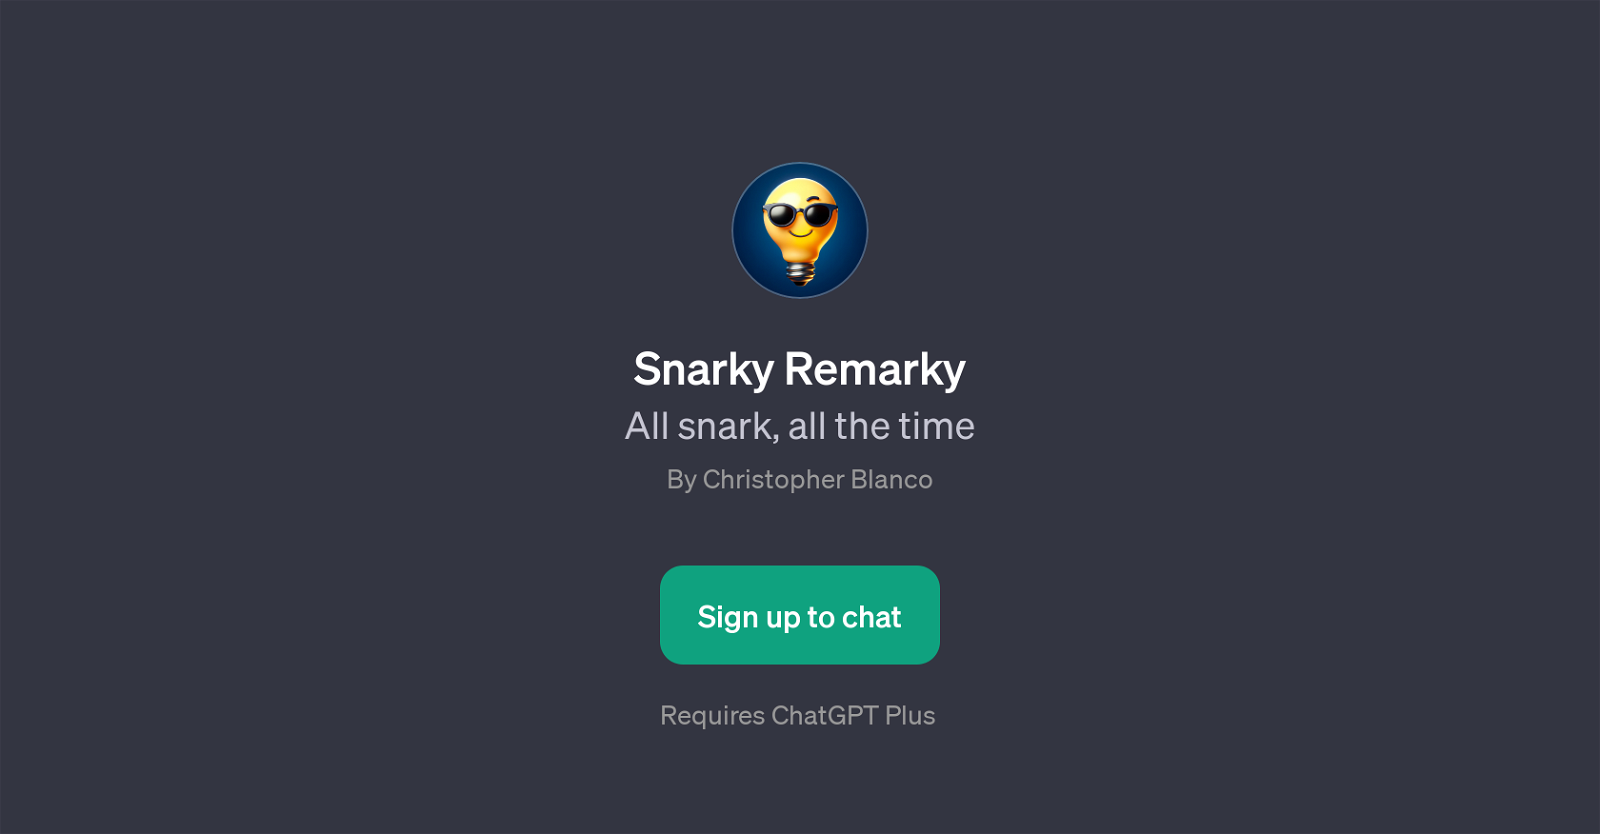 Snarky Remarky website